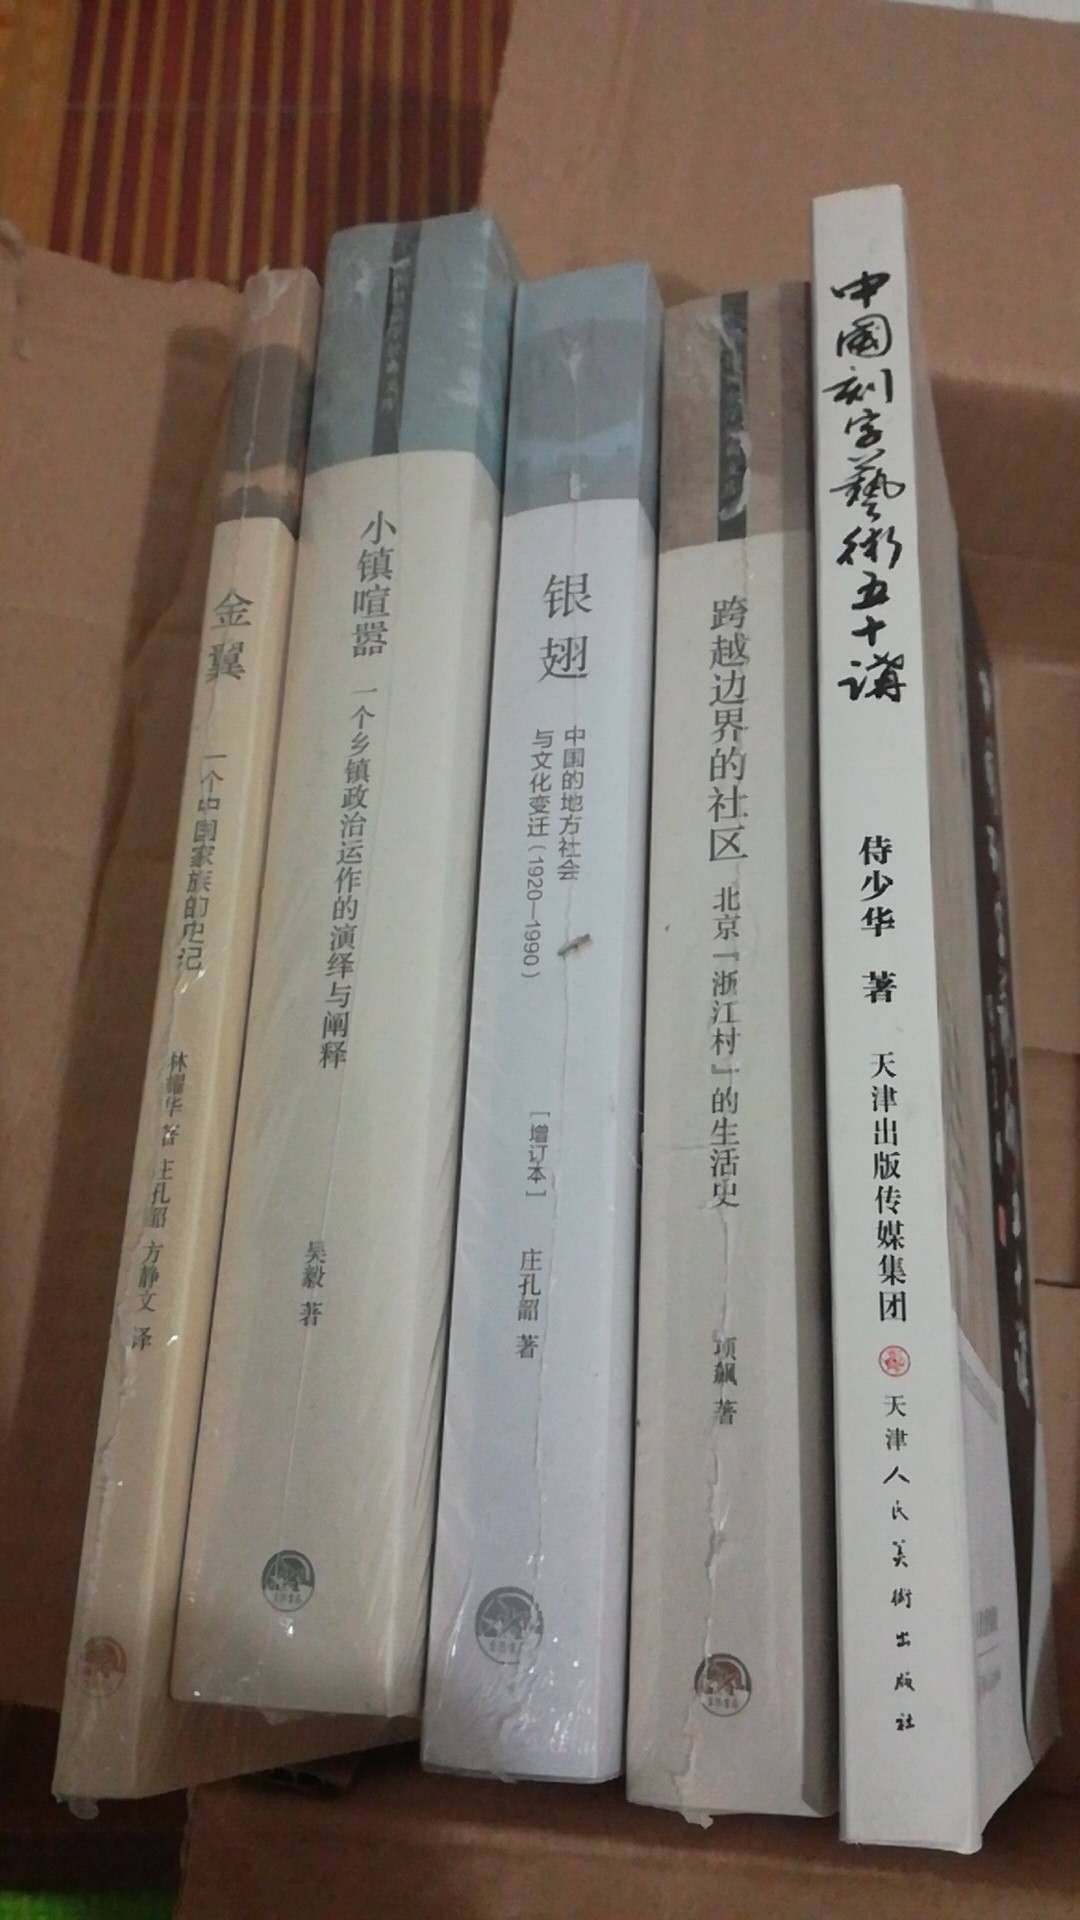 三联书店推出的中国社会学经典文库，平装16开，书脊胶装纸质优良，排版印刷得体大方，活动期间价格实惠，送货速度快，非常满意。